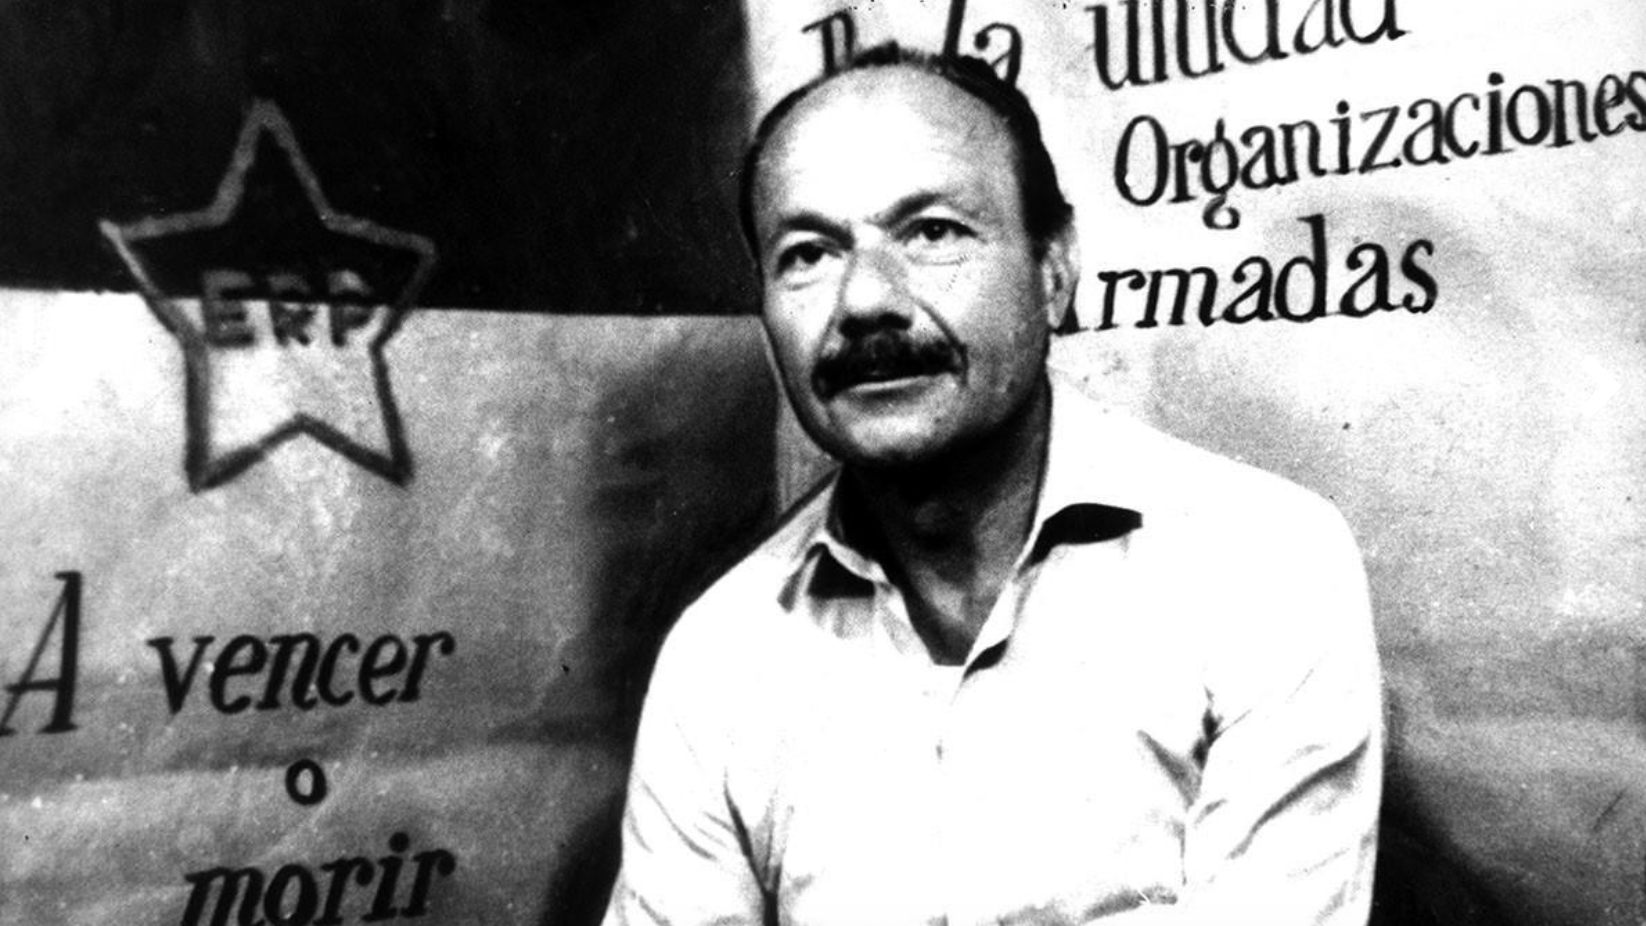 El gerente de Fiat Oberdán Sallustro durante su cautiverio en una imagen que tomaron los terroristas del ERP. Secuestrado el 21 de marzo de 1972, fue sometido a un "juicio popular" y ejecutado